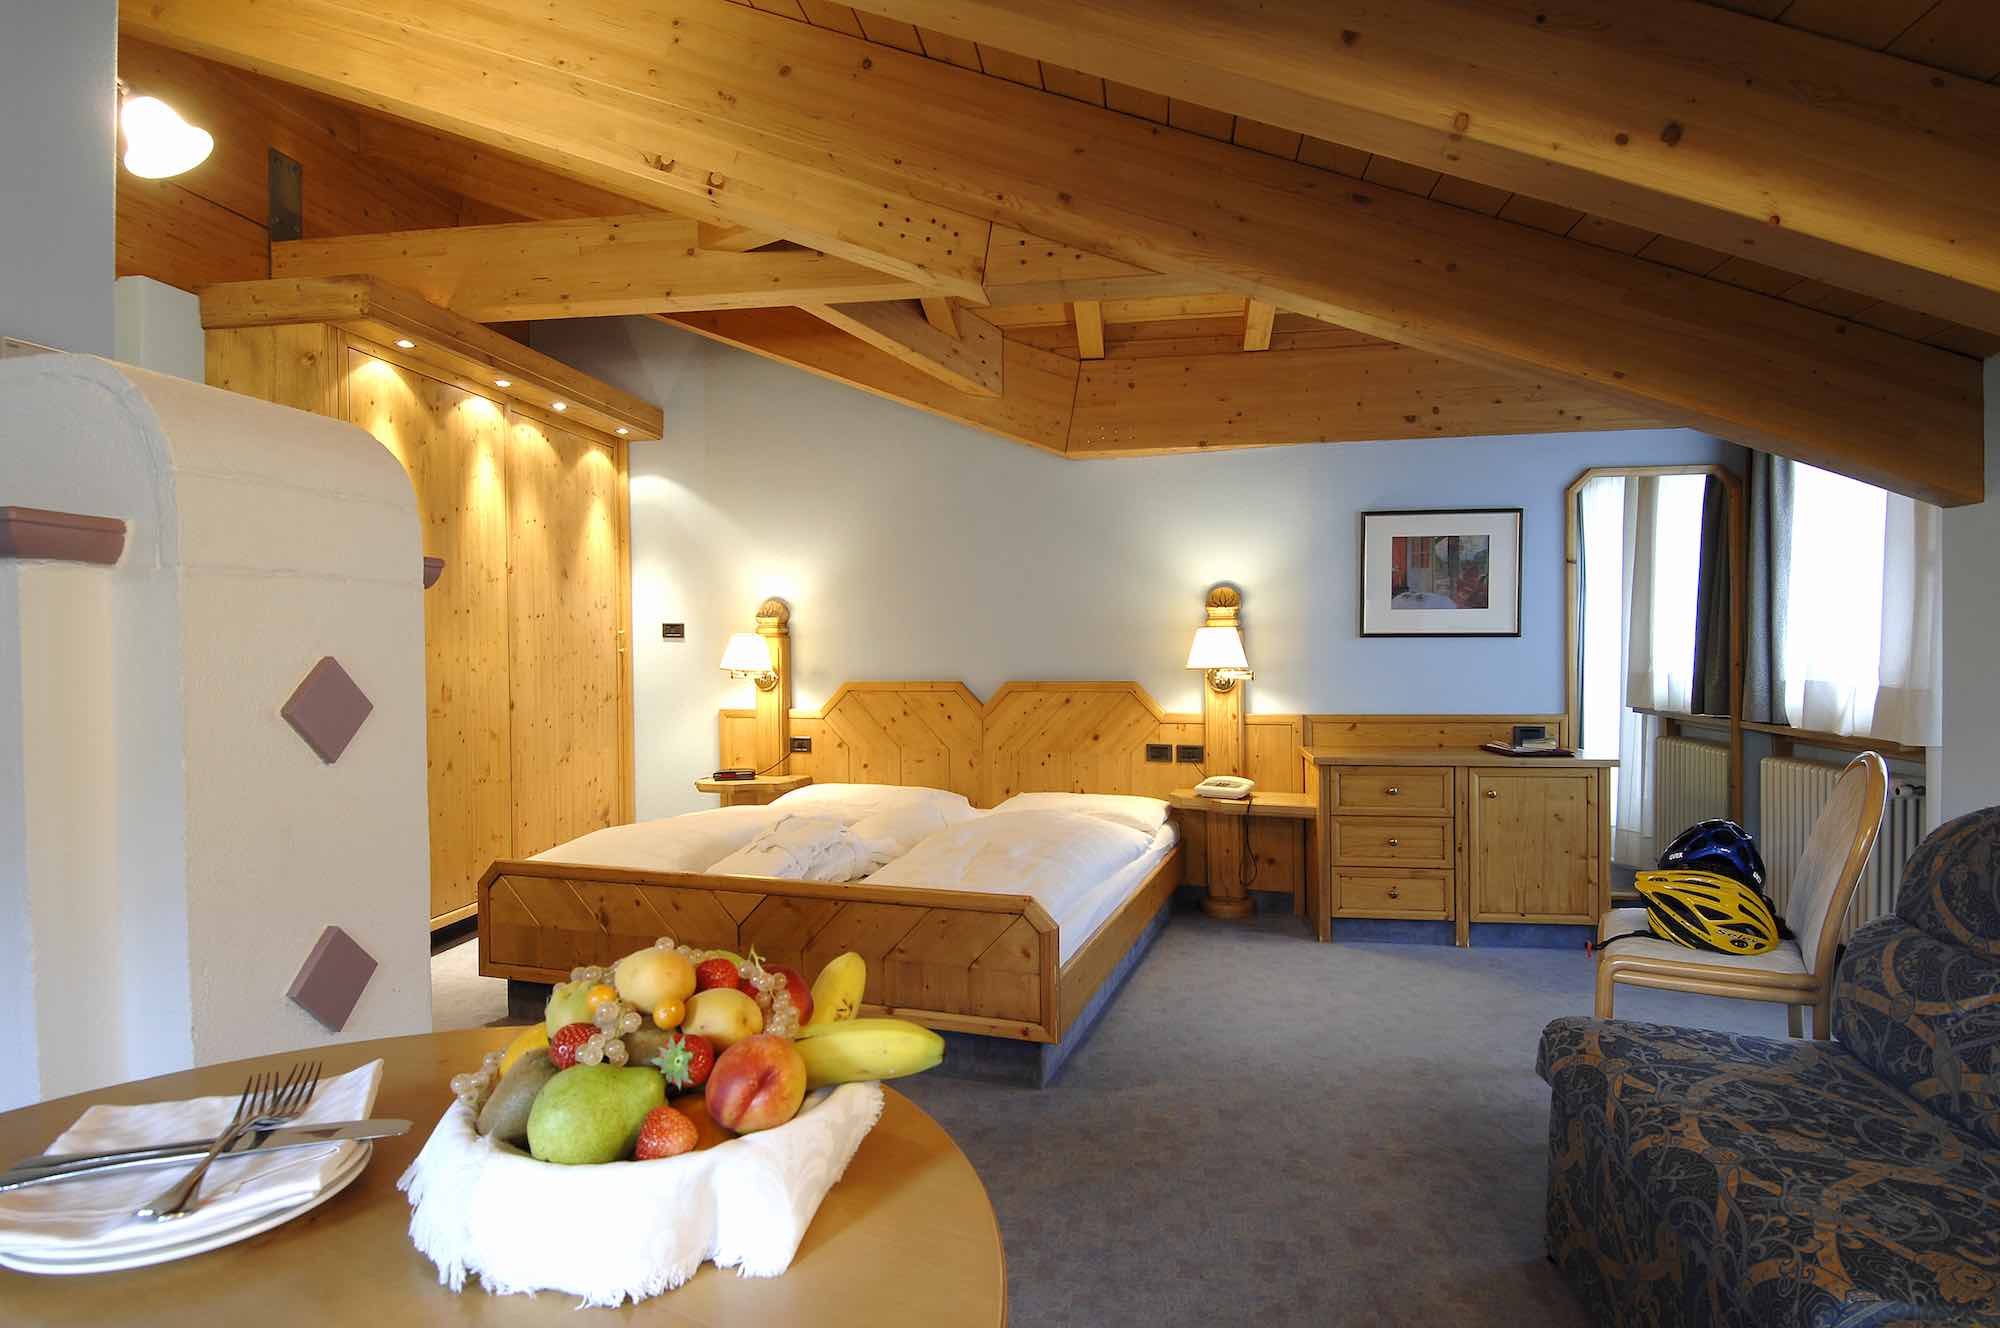 Hotel Concordia - Via Plan N.114, Livigno 23041 - Room - Suite 1